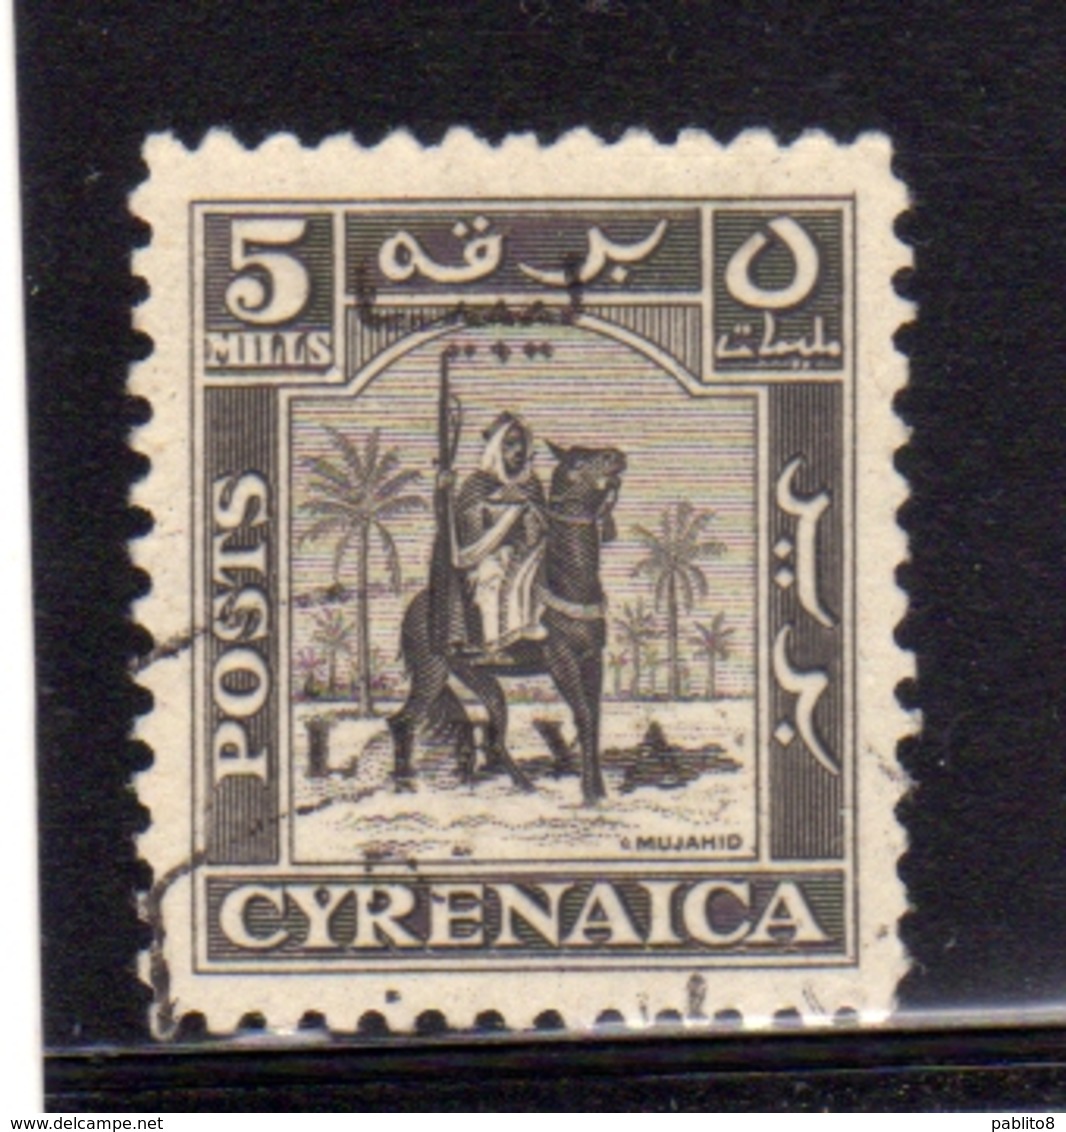 LIBIA LIBYA 1951 REGNO INDIPENDENTE EMISSIONE PER LA CIRENAICA CYRENAICA 5m USATO USED OBLITERE' - Libya